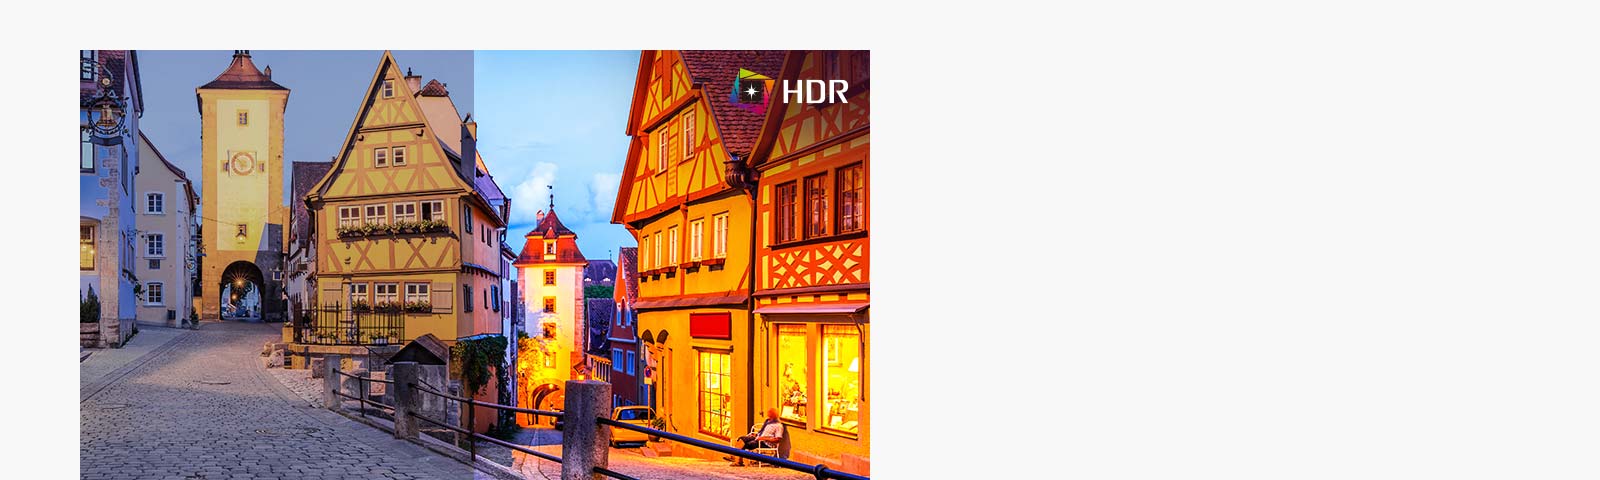 טכנולוגיית HDR משולבת כיום במגוון תכנים. צג זה תואם ל-HDR10 (טווח דינמי גבוה), התומך ברמות ספציפיות של צבע ובהירות המאפשרות לצופים ליהנות מהתוכן בצבעים דרמטיים.